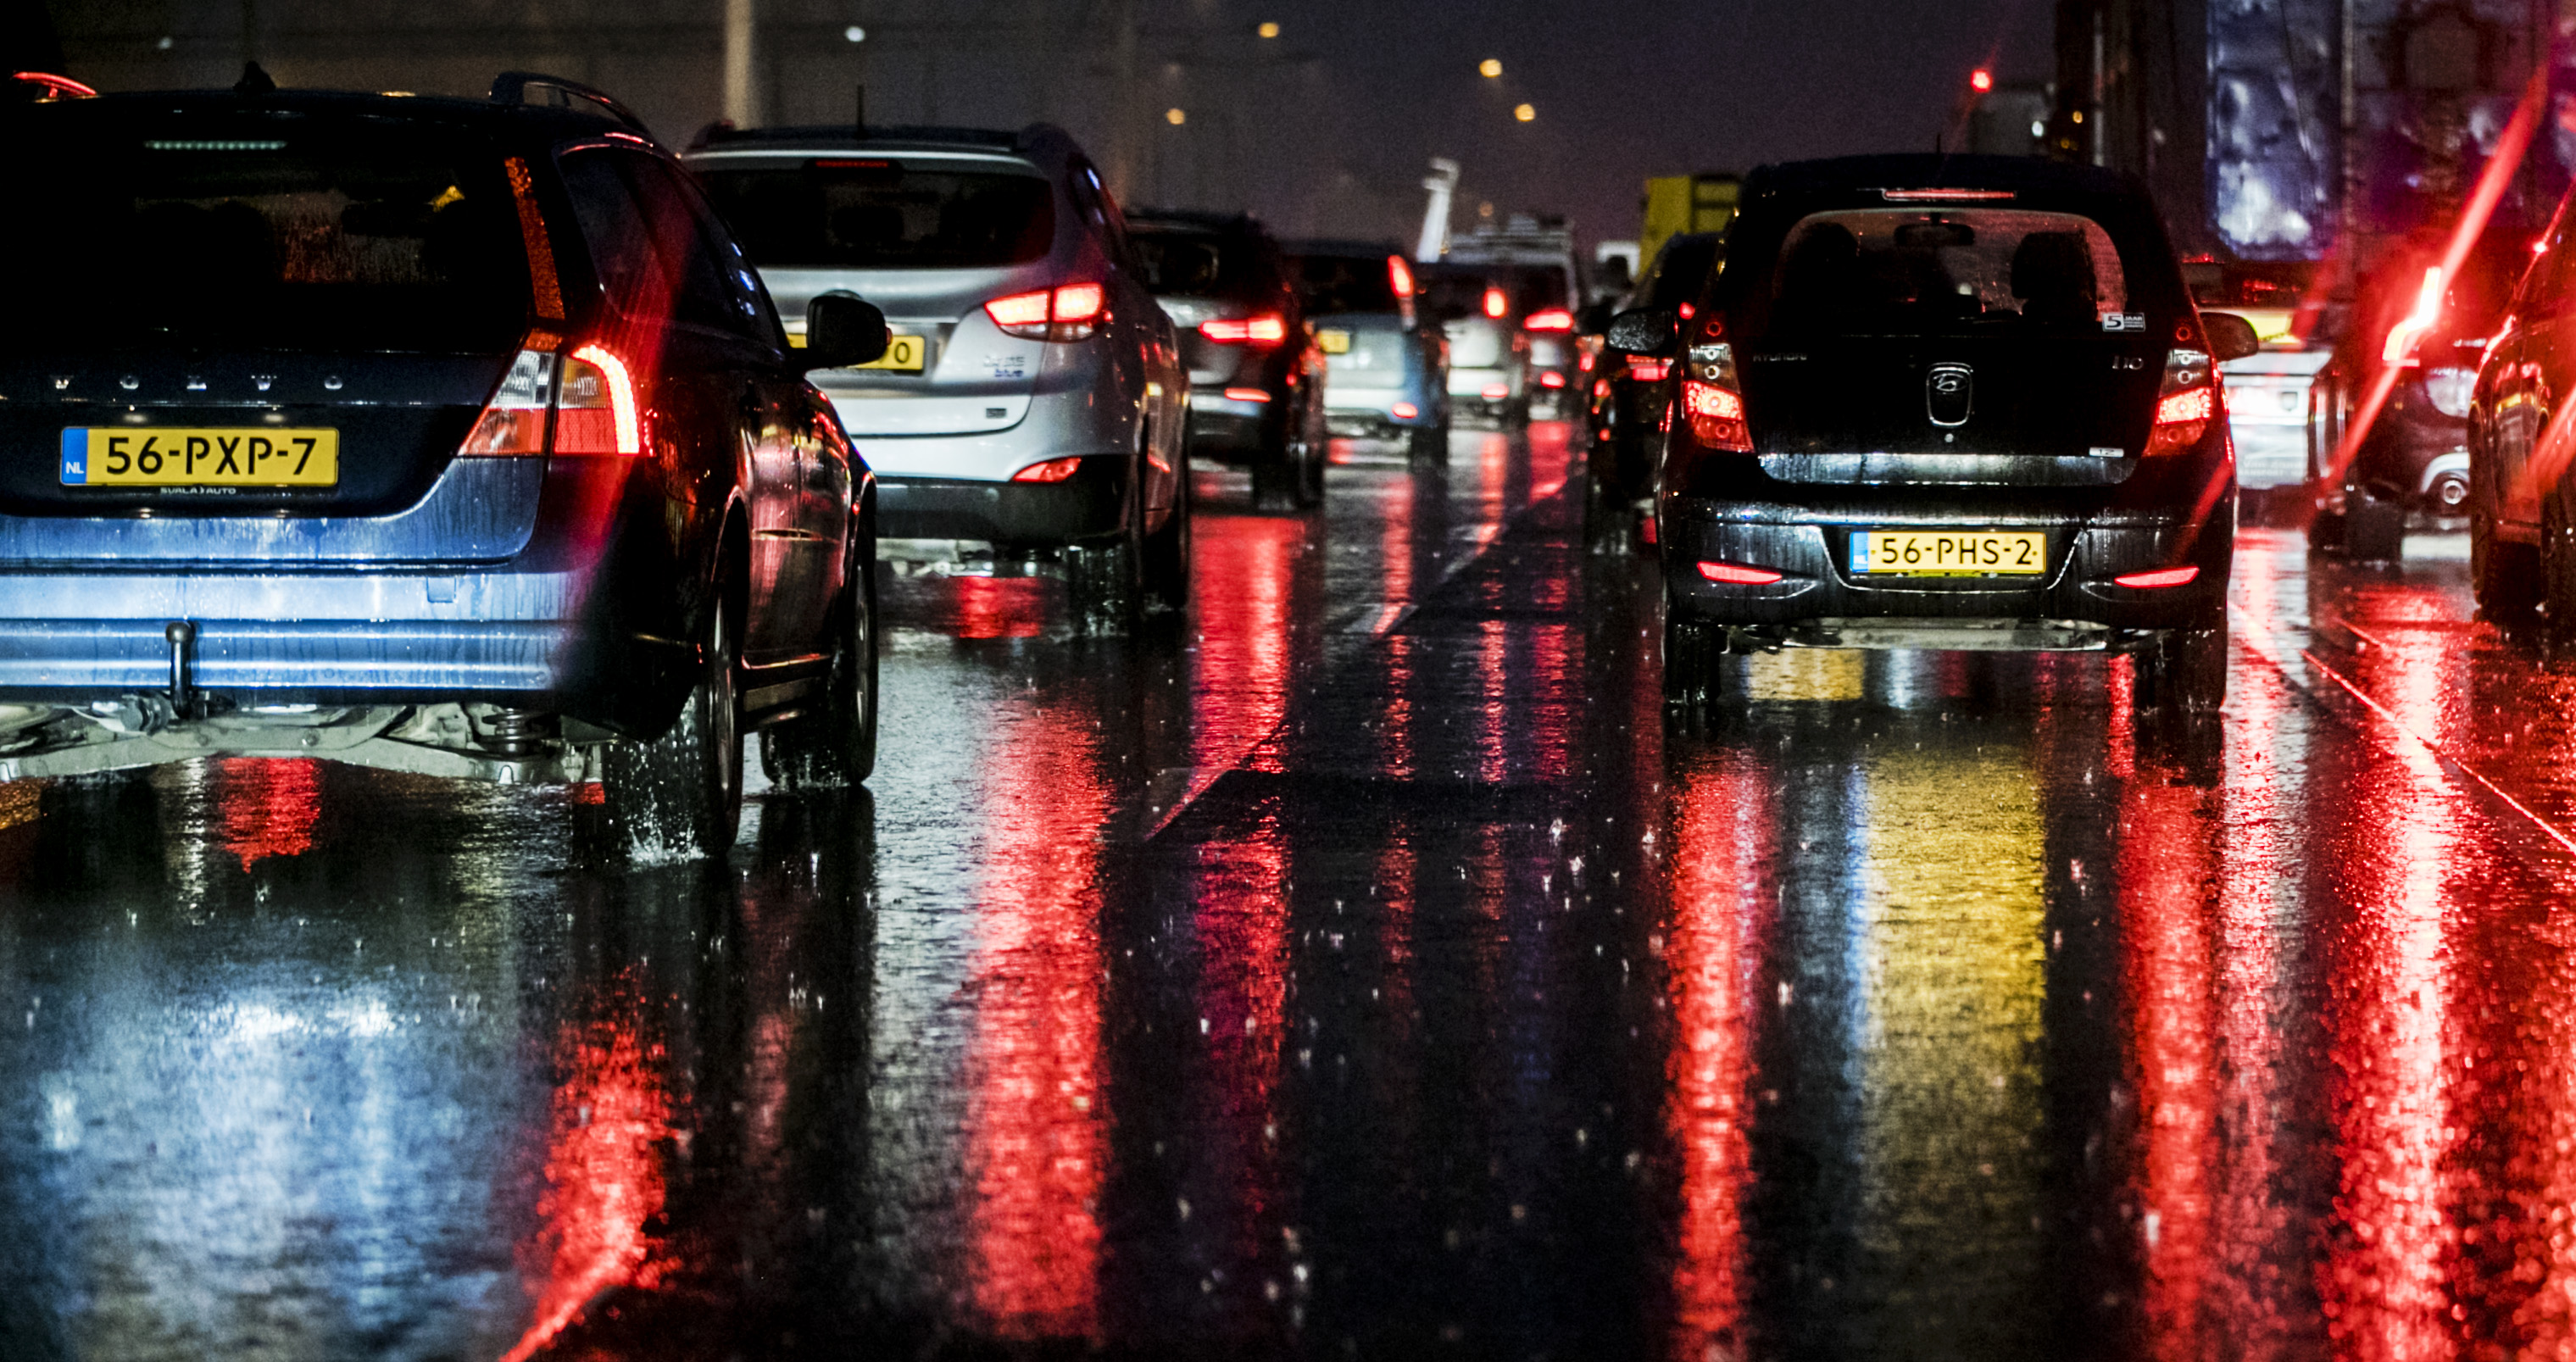 2016-11-10 17:10:54 AMSTERDAM - Files door regenval op de A4 nabij Schiphol. ANP REMKO DE WAAL